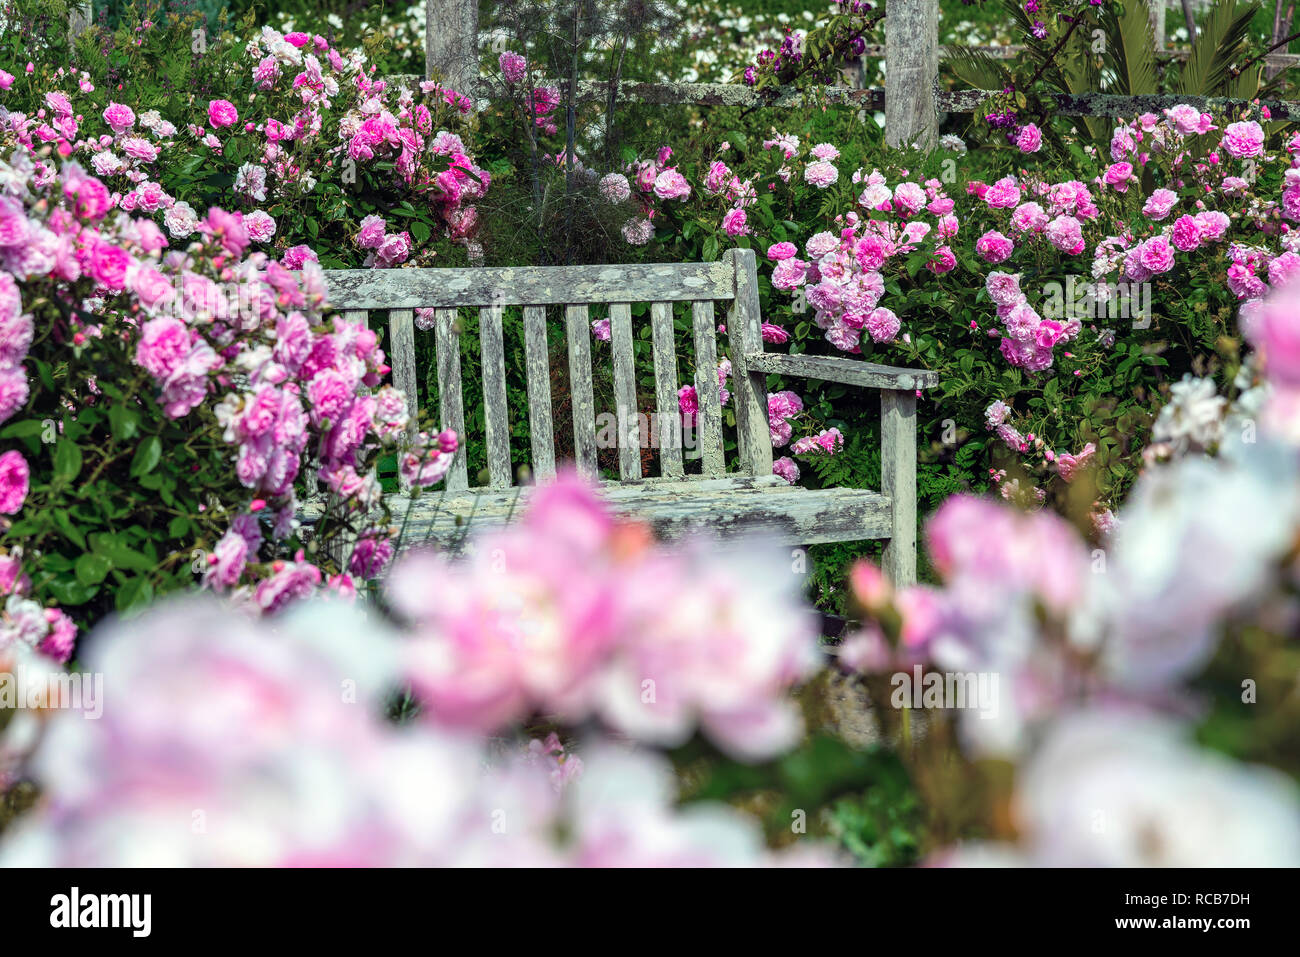 Ancien banc de jardin entouré de fleurs roses roses dans un jardin anglais, Sussex, au sud de l'Angleterre, Royaume-Uni Banque D'Images